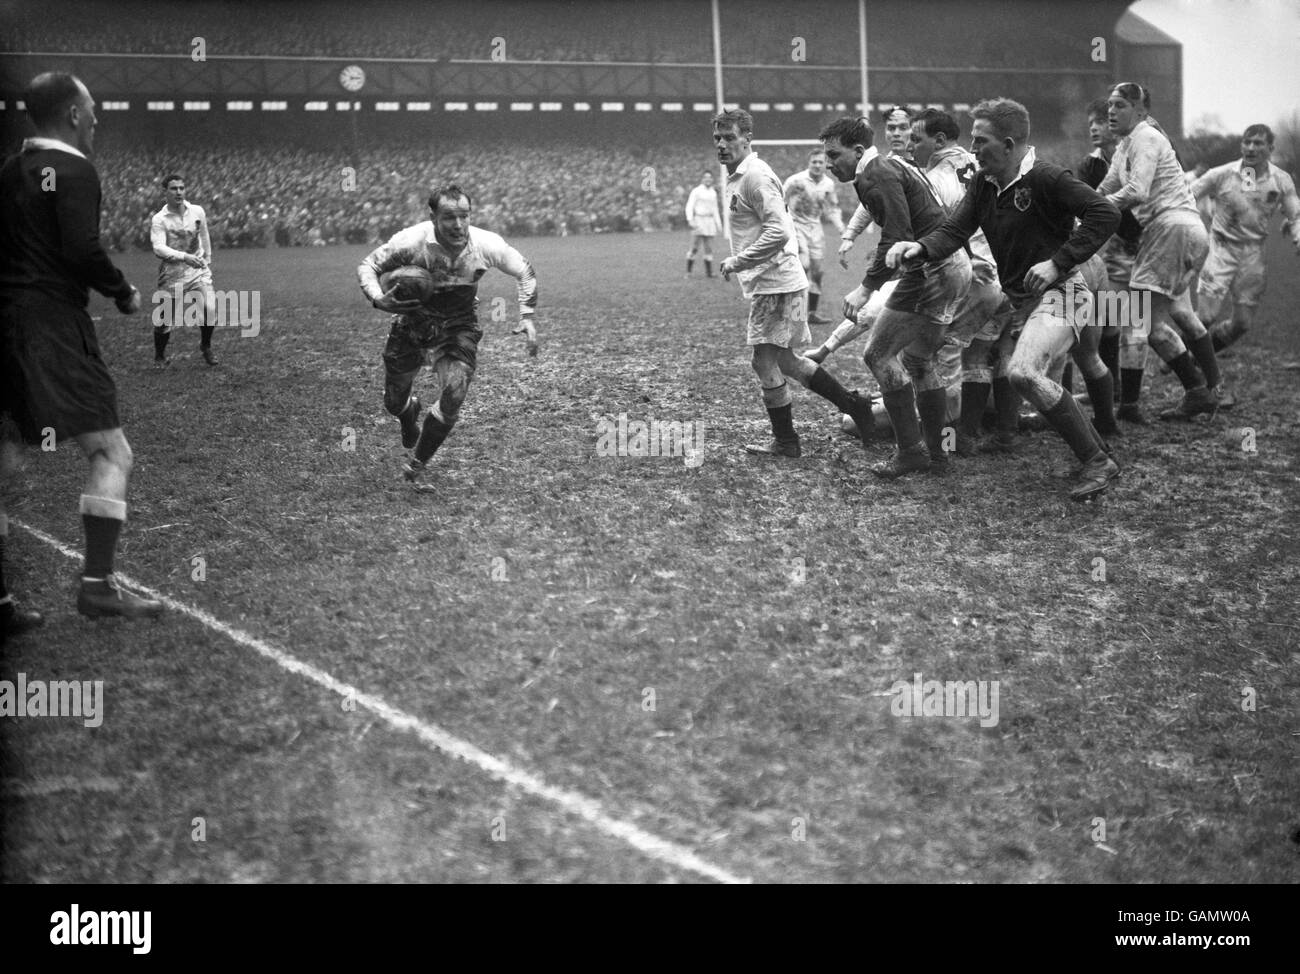 Rugby Union - Championnat des cinq nations - Angleterre / Irlande.Dickie Jeeps (l), en Angleterre, fait une pause sur le côté étroit Banque D'Images